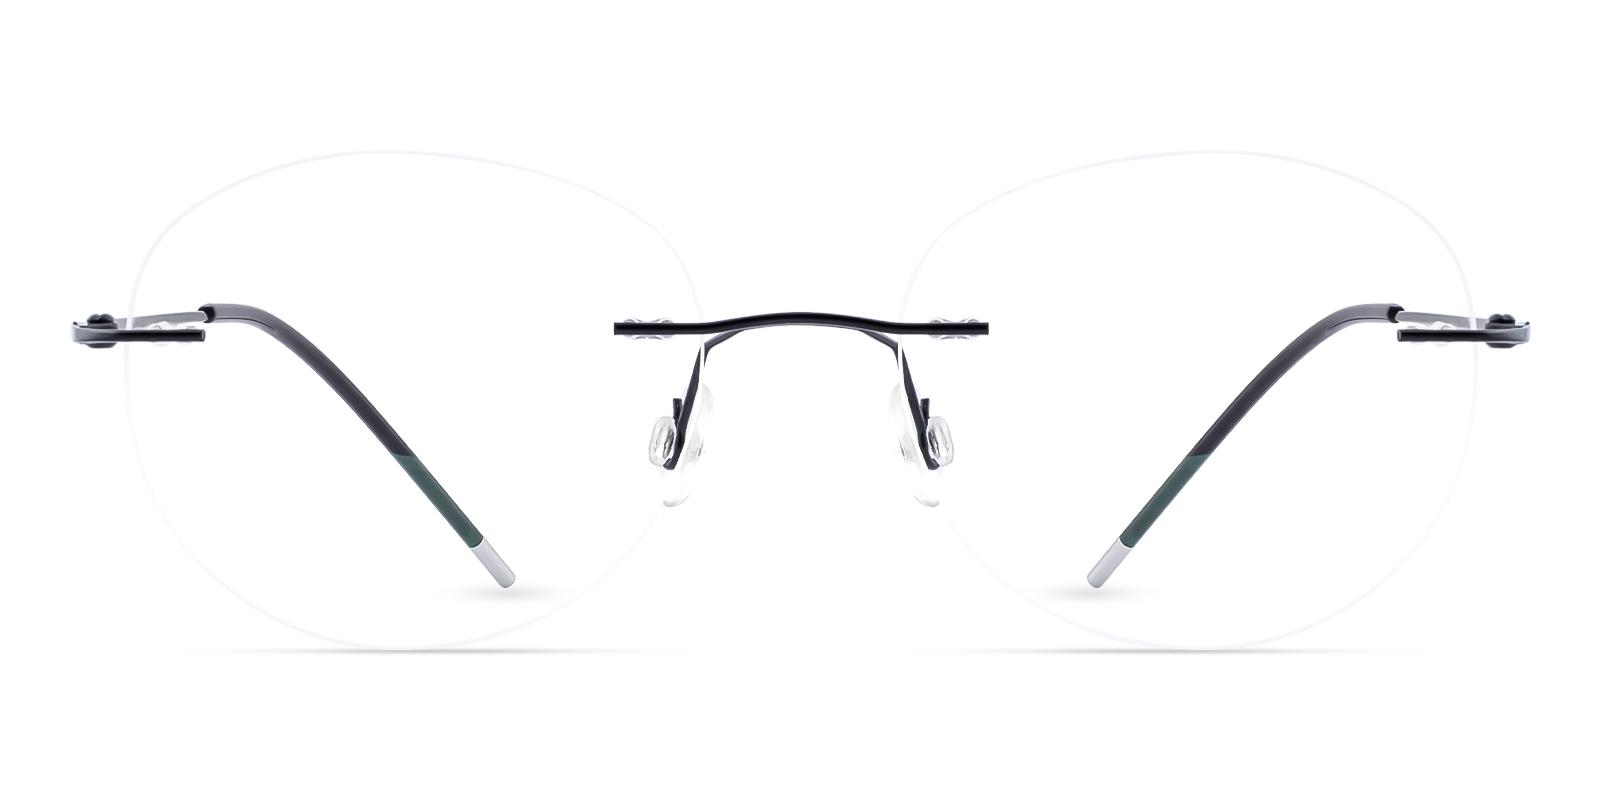 Terrace Park Black Metal Eyeglasses , NosePads Frames from ABBE Glasses